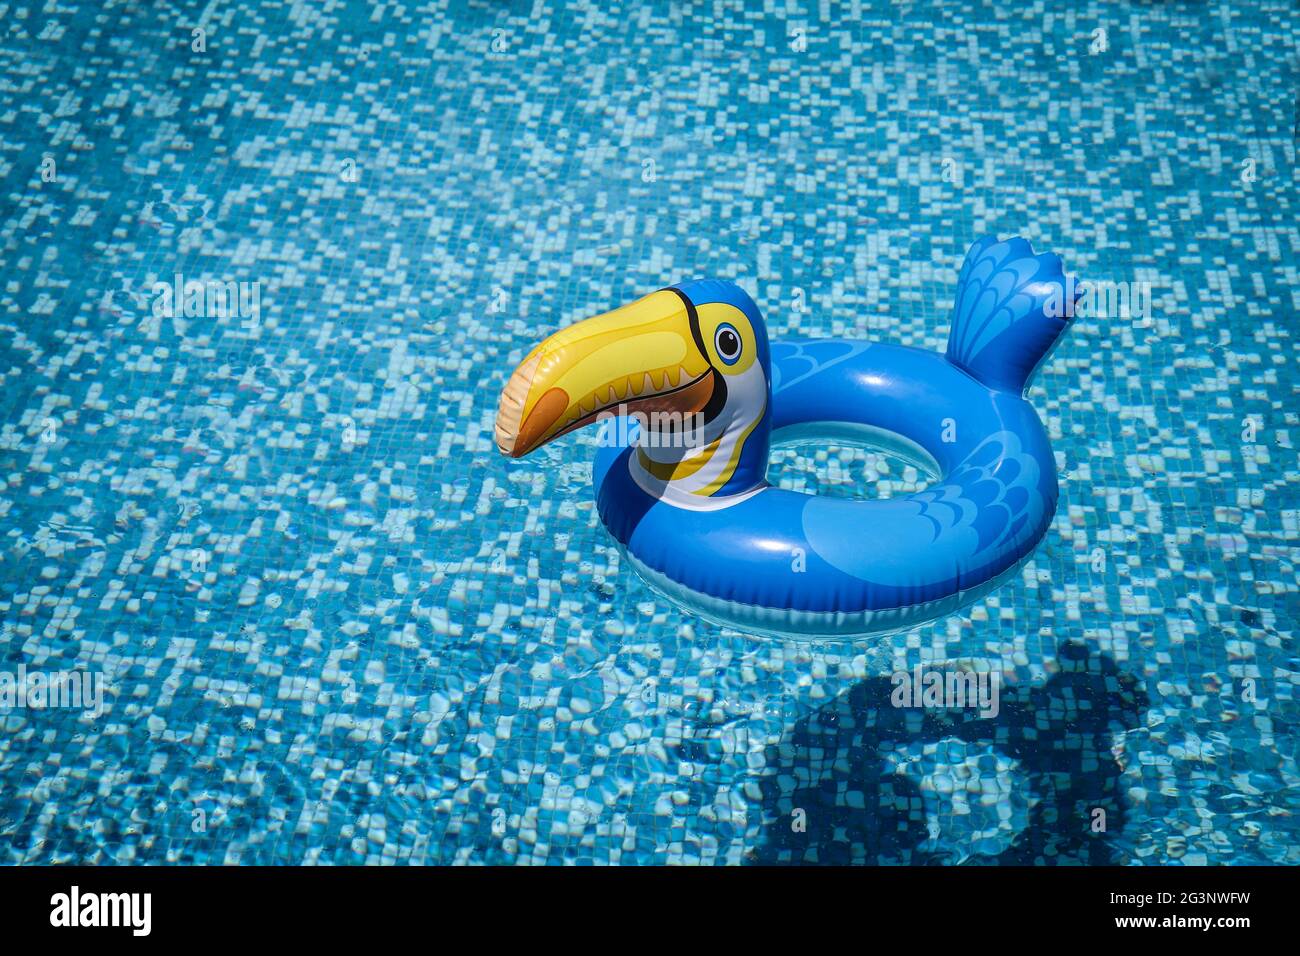 Jouet gonflable de piscine Pelican dans la piscine vide. Jouet gonflable de piscine Pelican flottant dans l'eau bleue. Espace de copie vide sur le côté gauche. Banque D'Images